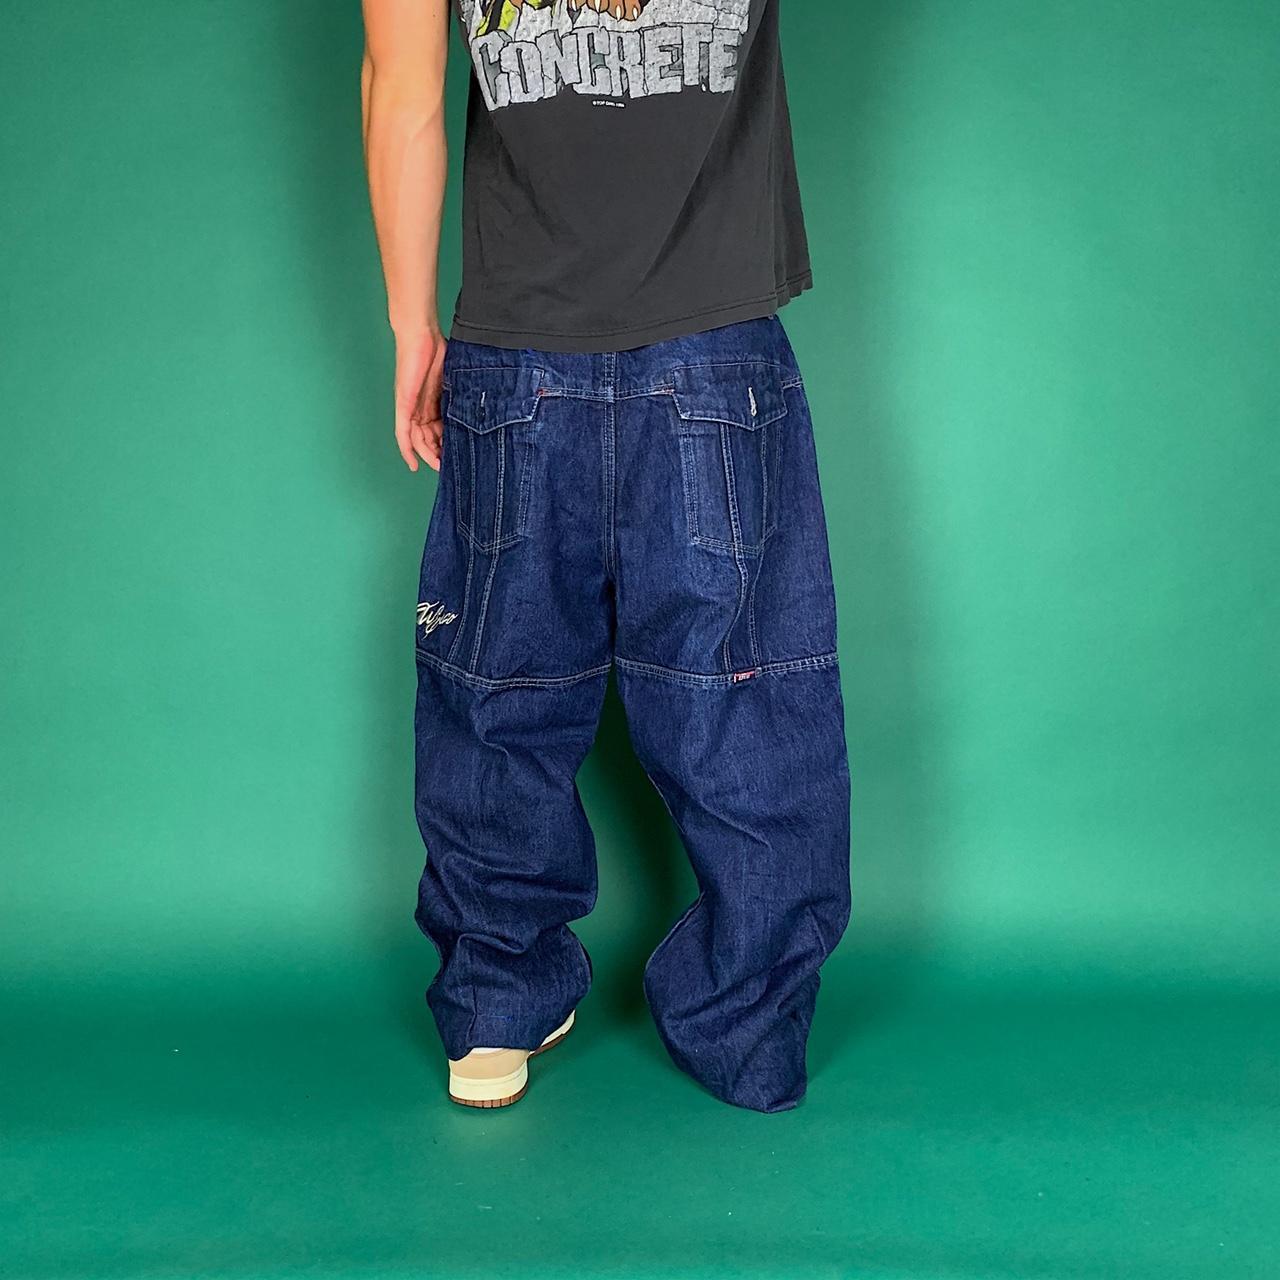 Vintage baggy carpenter jeans. 36 inch waist. 28... - Depop